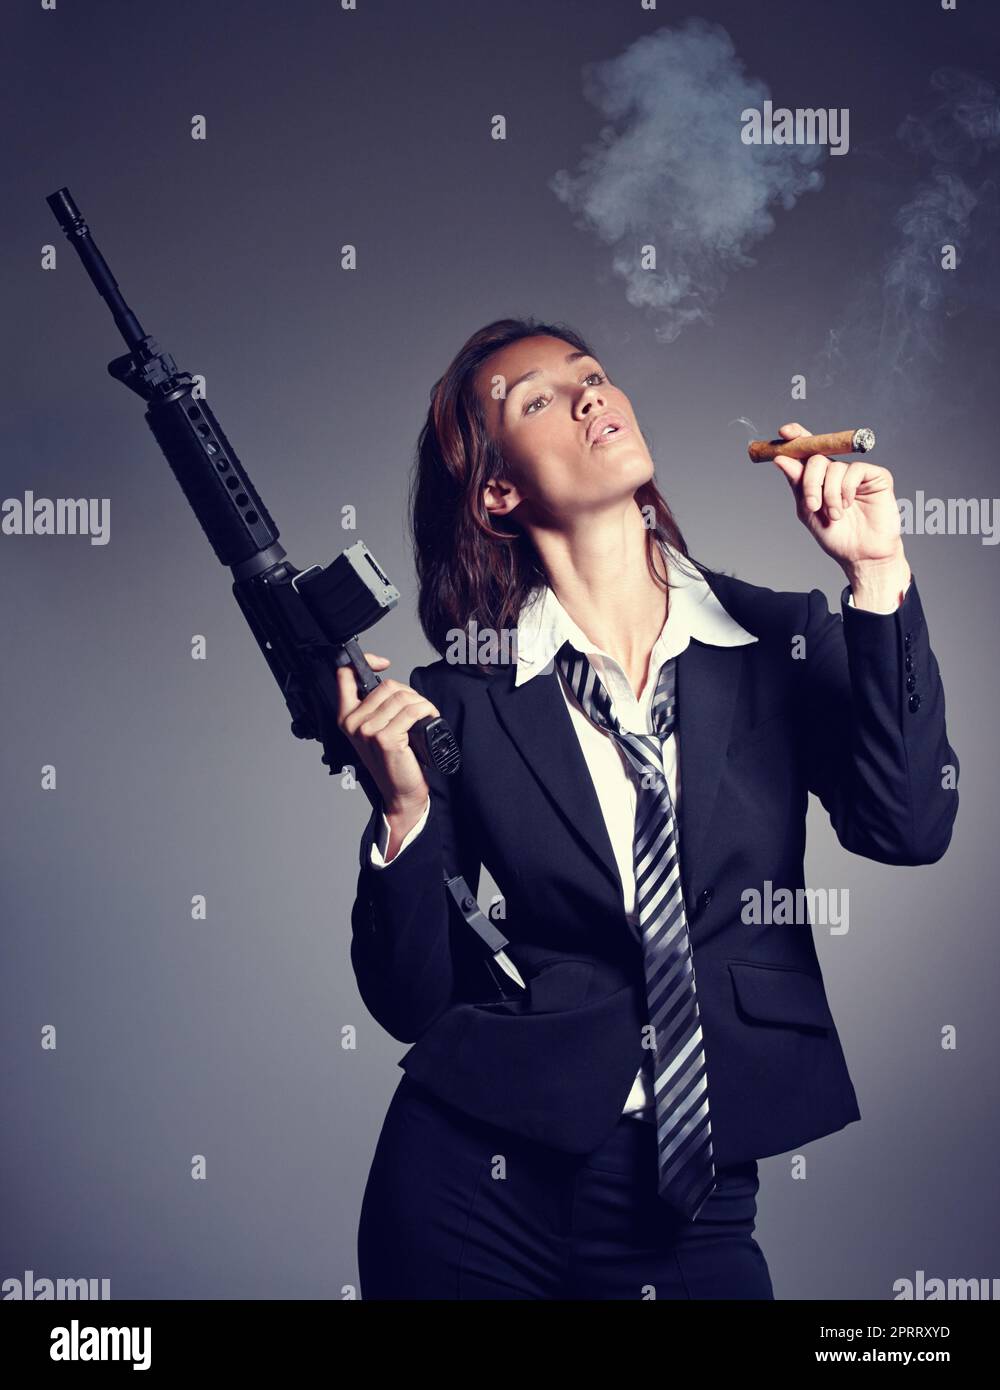 On a Job Gut gemacht. Eine junge Geschäftsfrau in Anzug und Krawatte, die ein Gewehr hält, während sie eine Zigarre raucht. Stockfoto